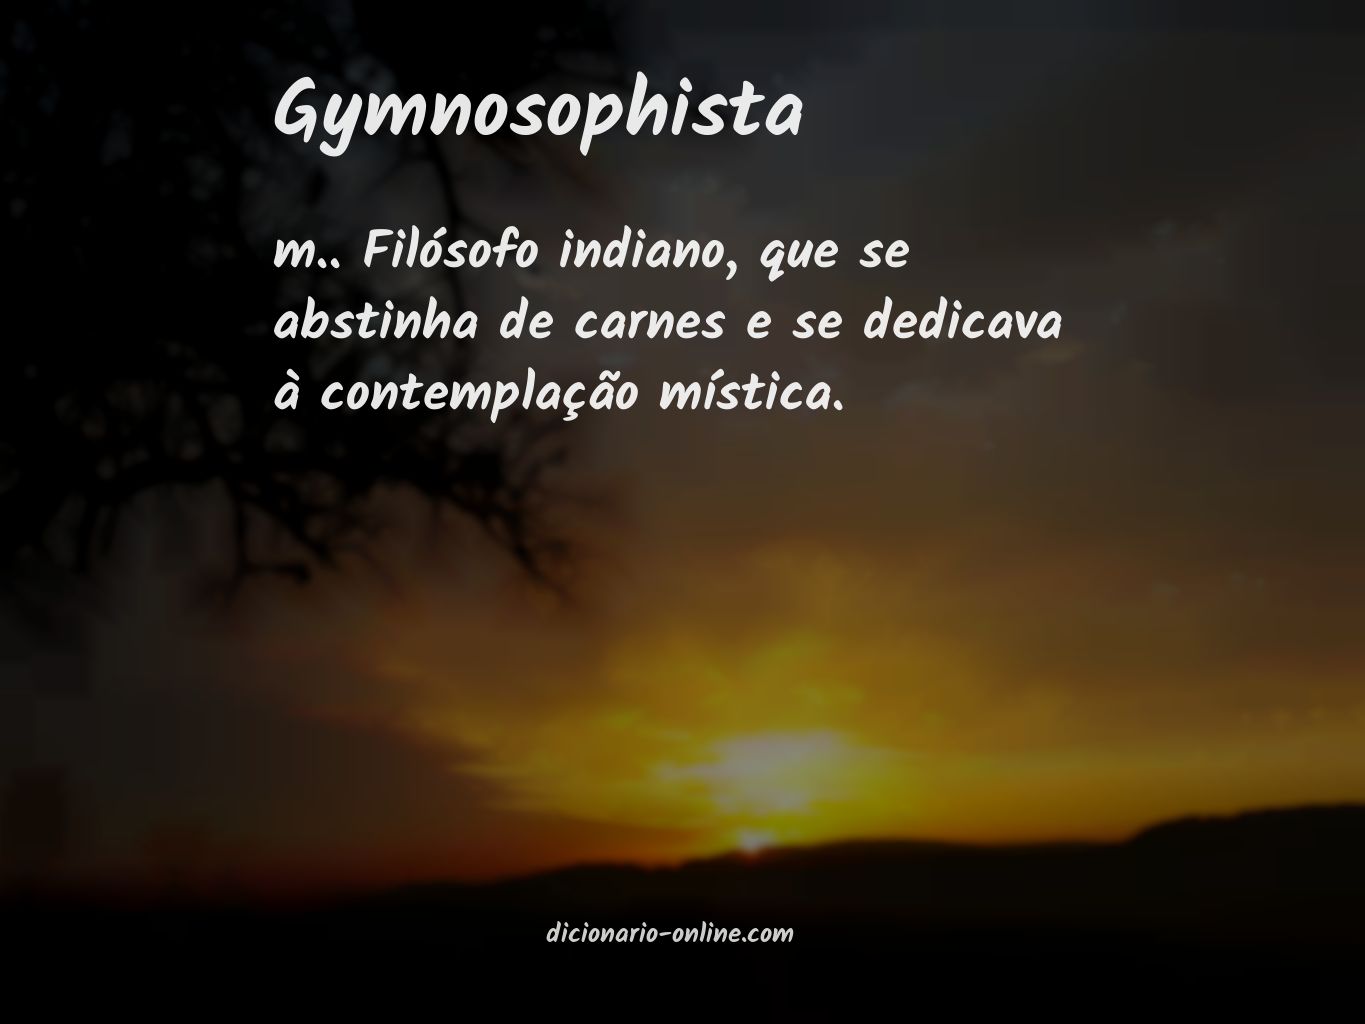 Significado de gymnosophista